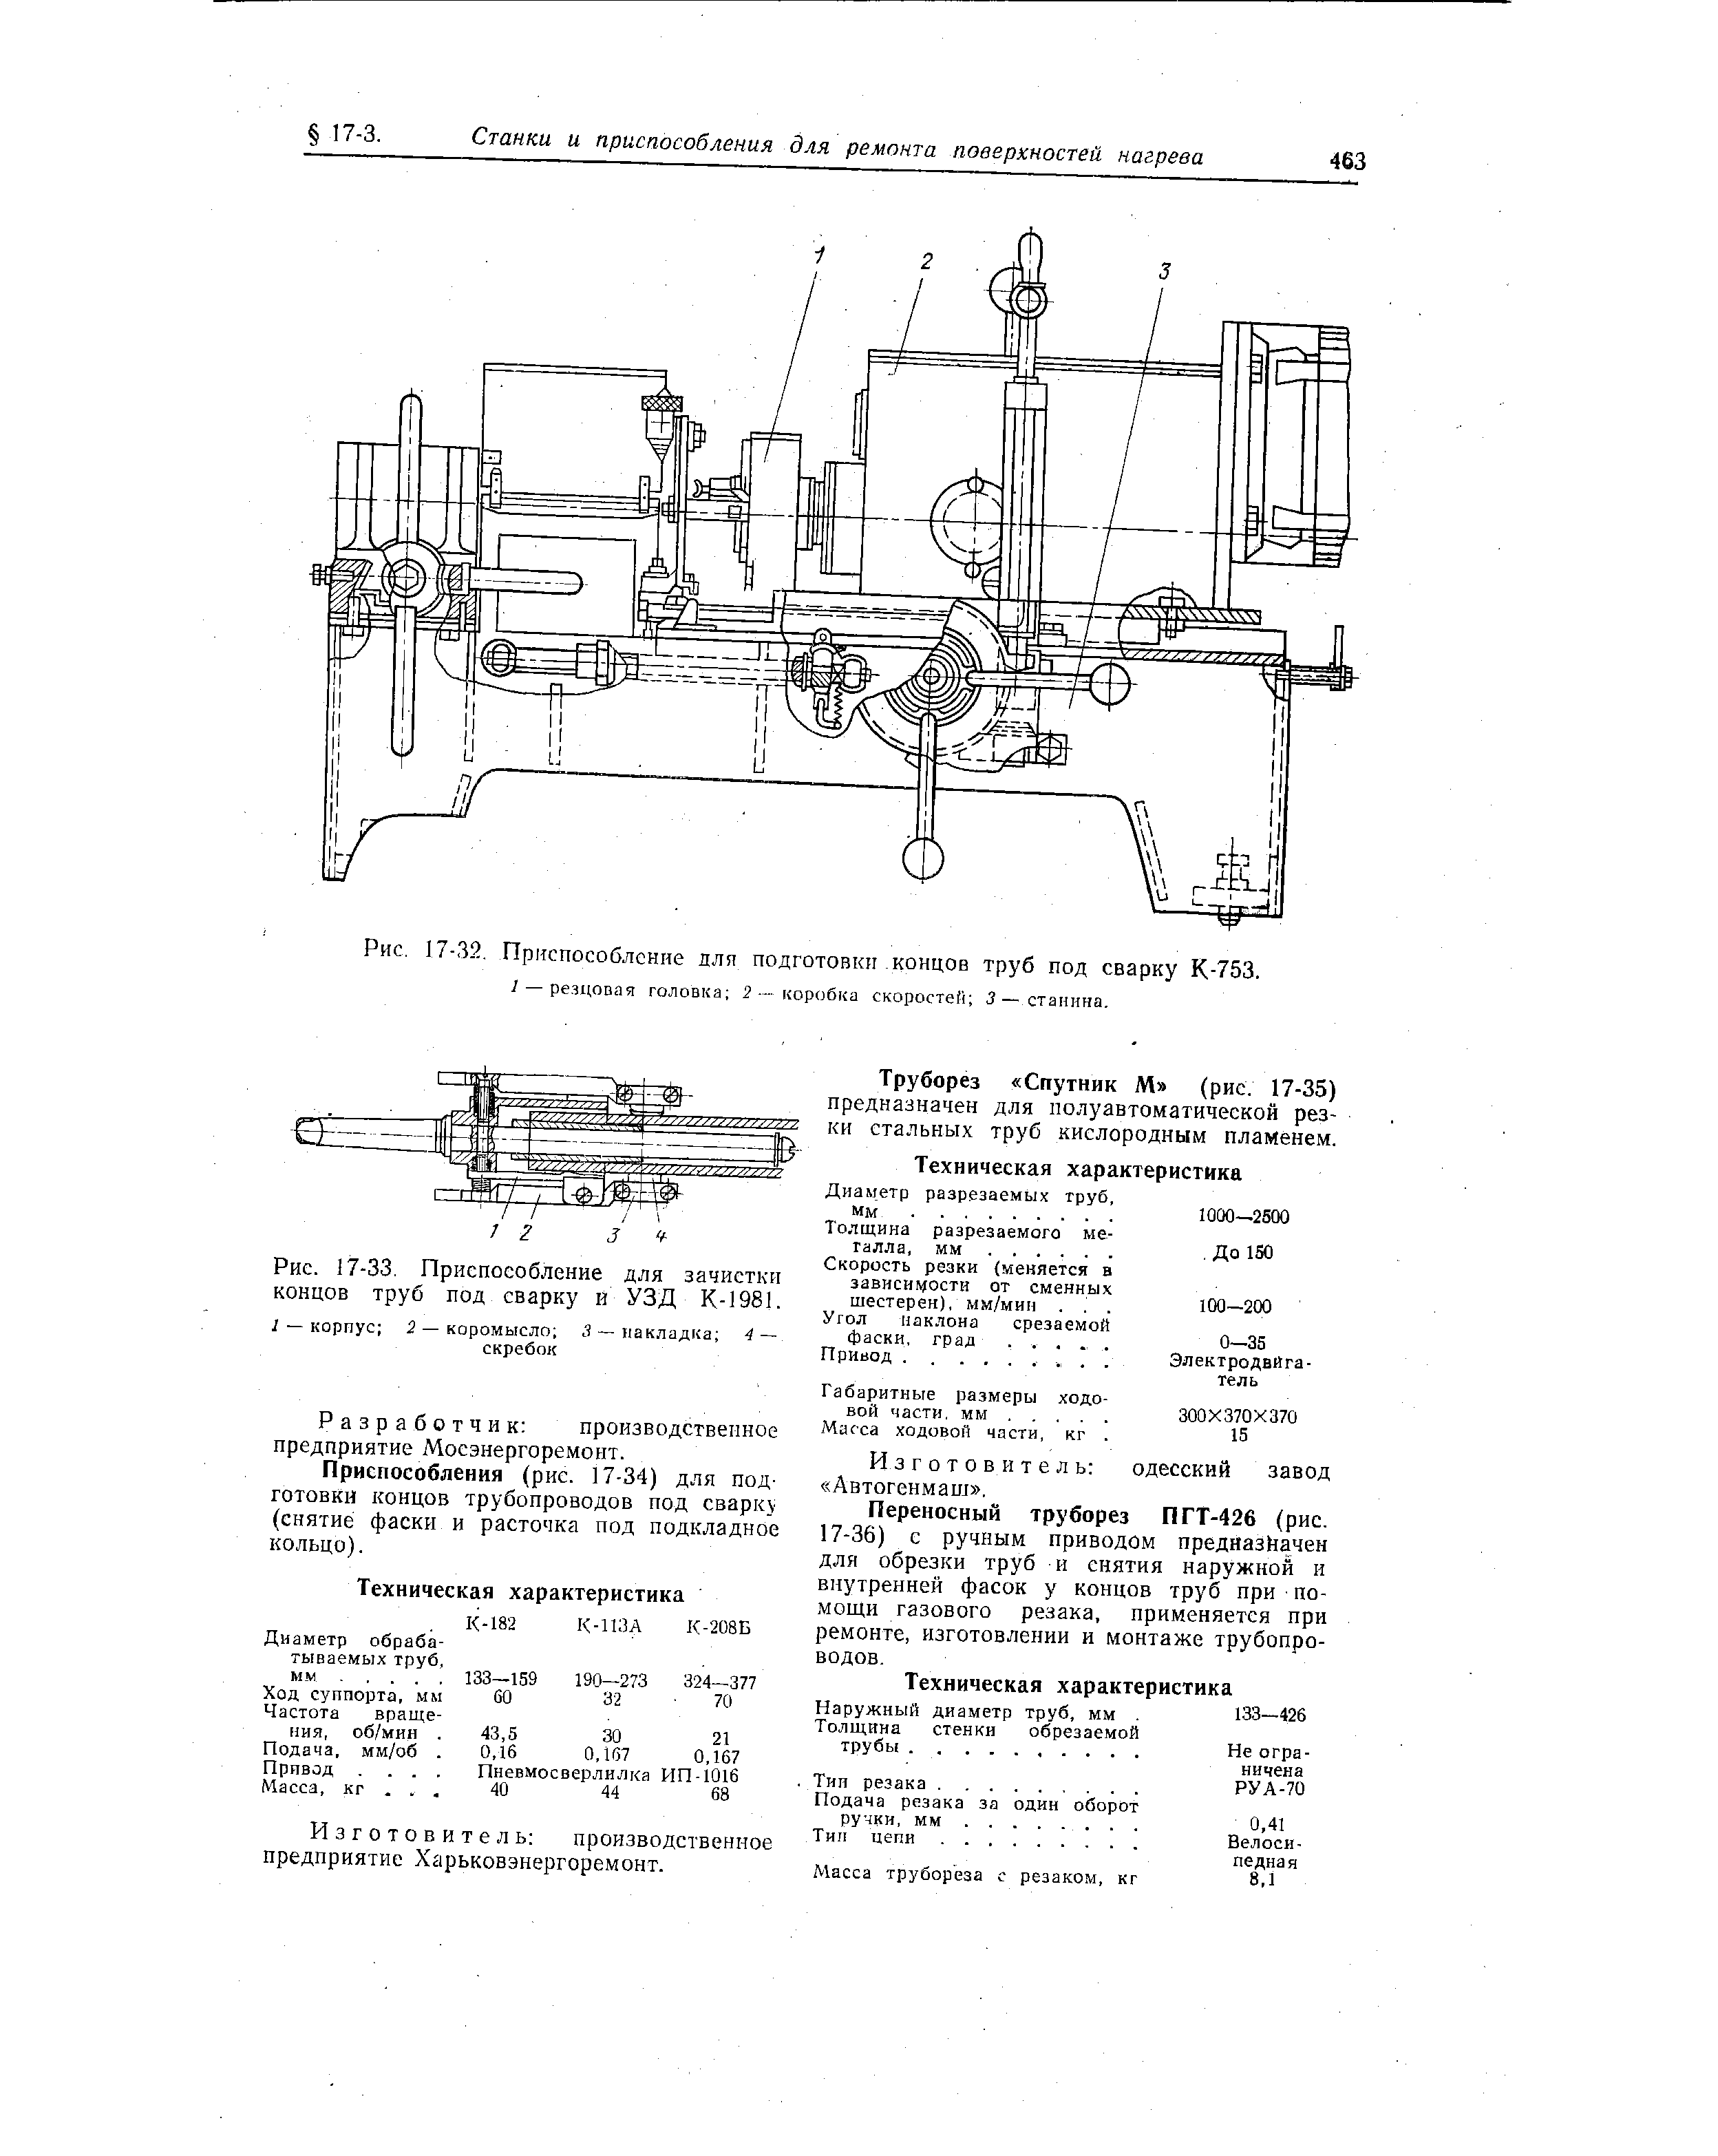 Рис. 17-33. Приспособление для зачистки концов труб под сварку и УЗД К-1981.
